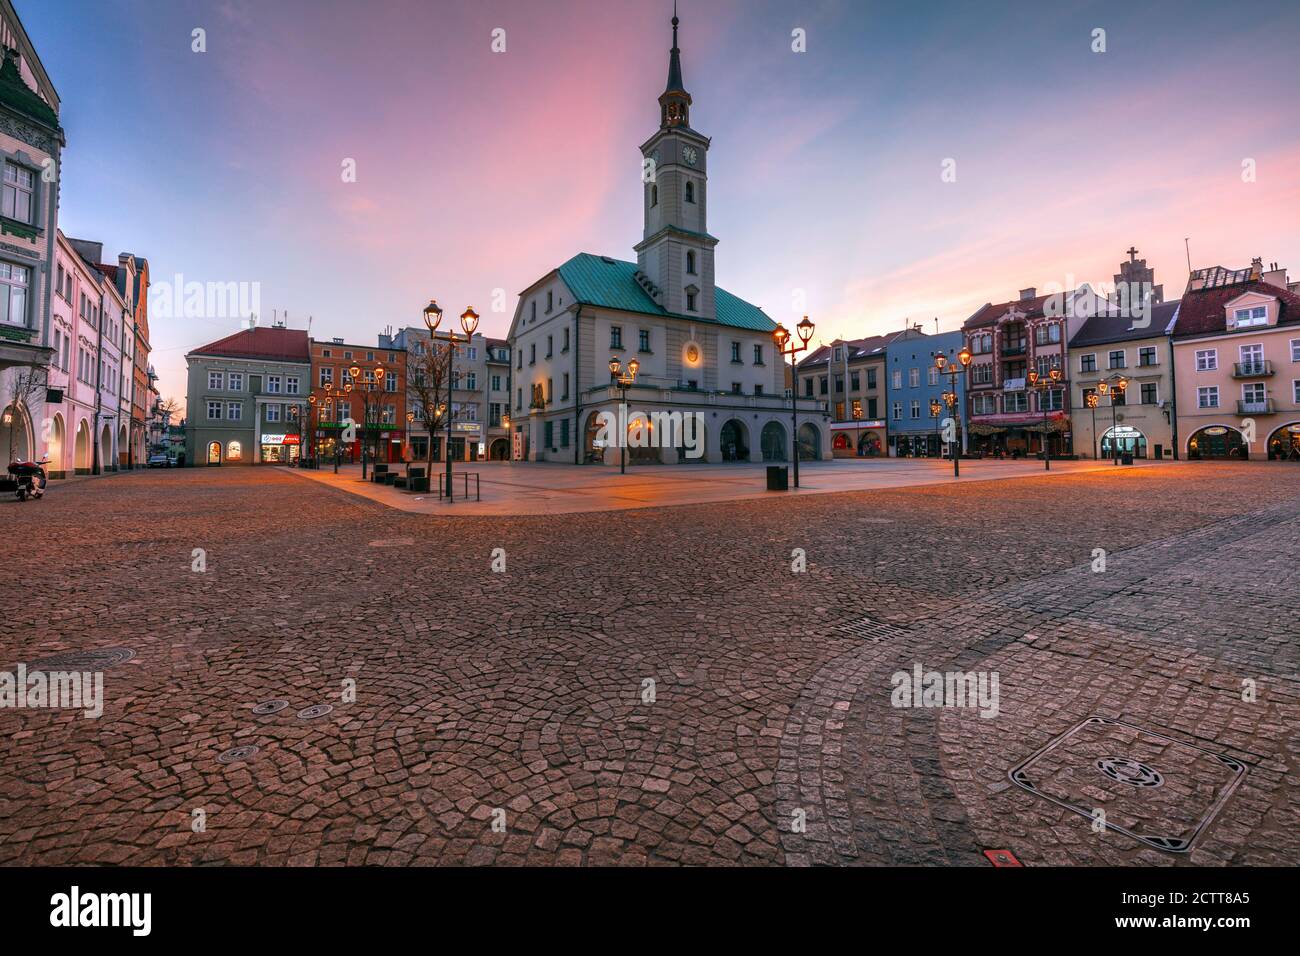 Old town of Gliwice. Gliwice, Silesia, Poland. Stock Photo